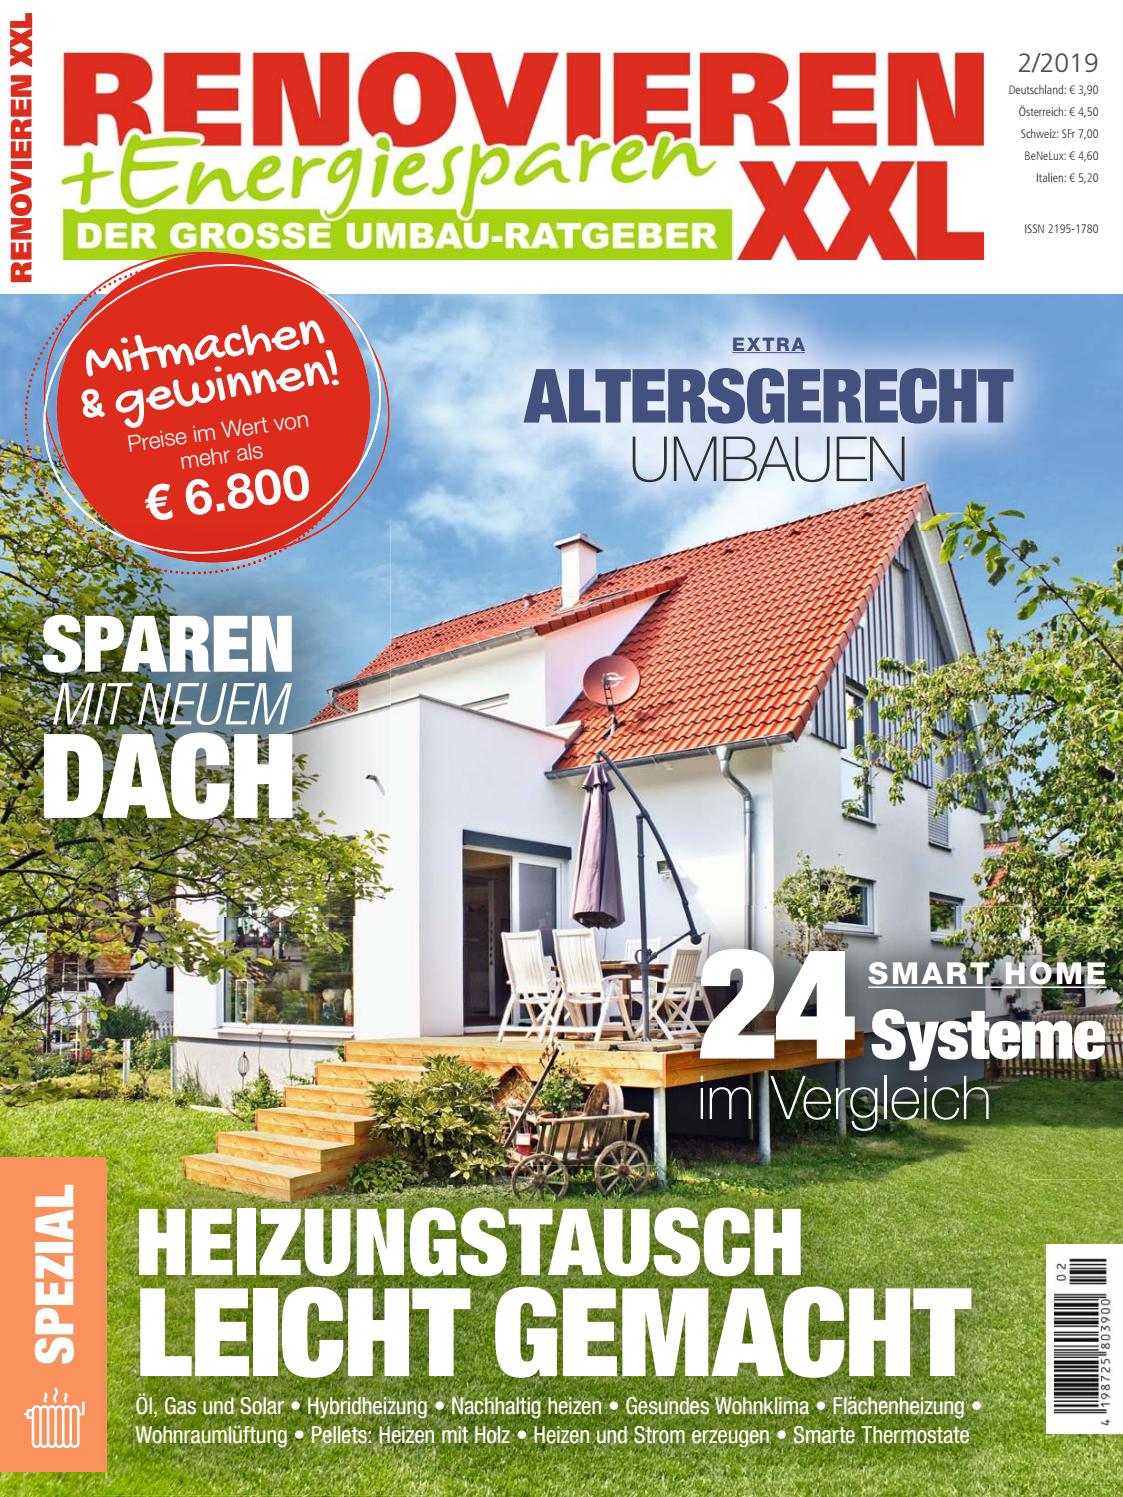 Garten Ratgeber Elegant Renovieren & Energiesparen 2 2019 by Family Home Verlag Gmbh